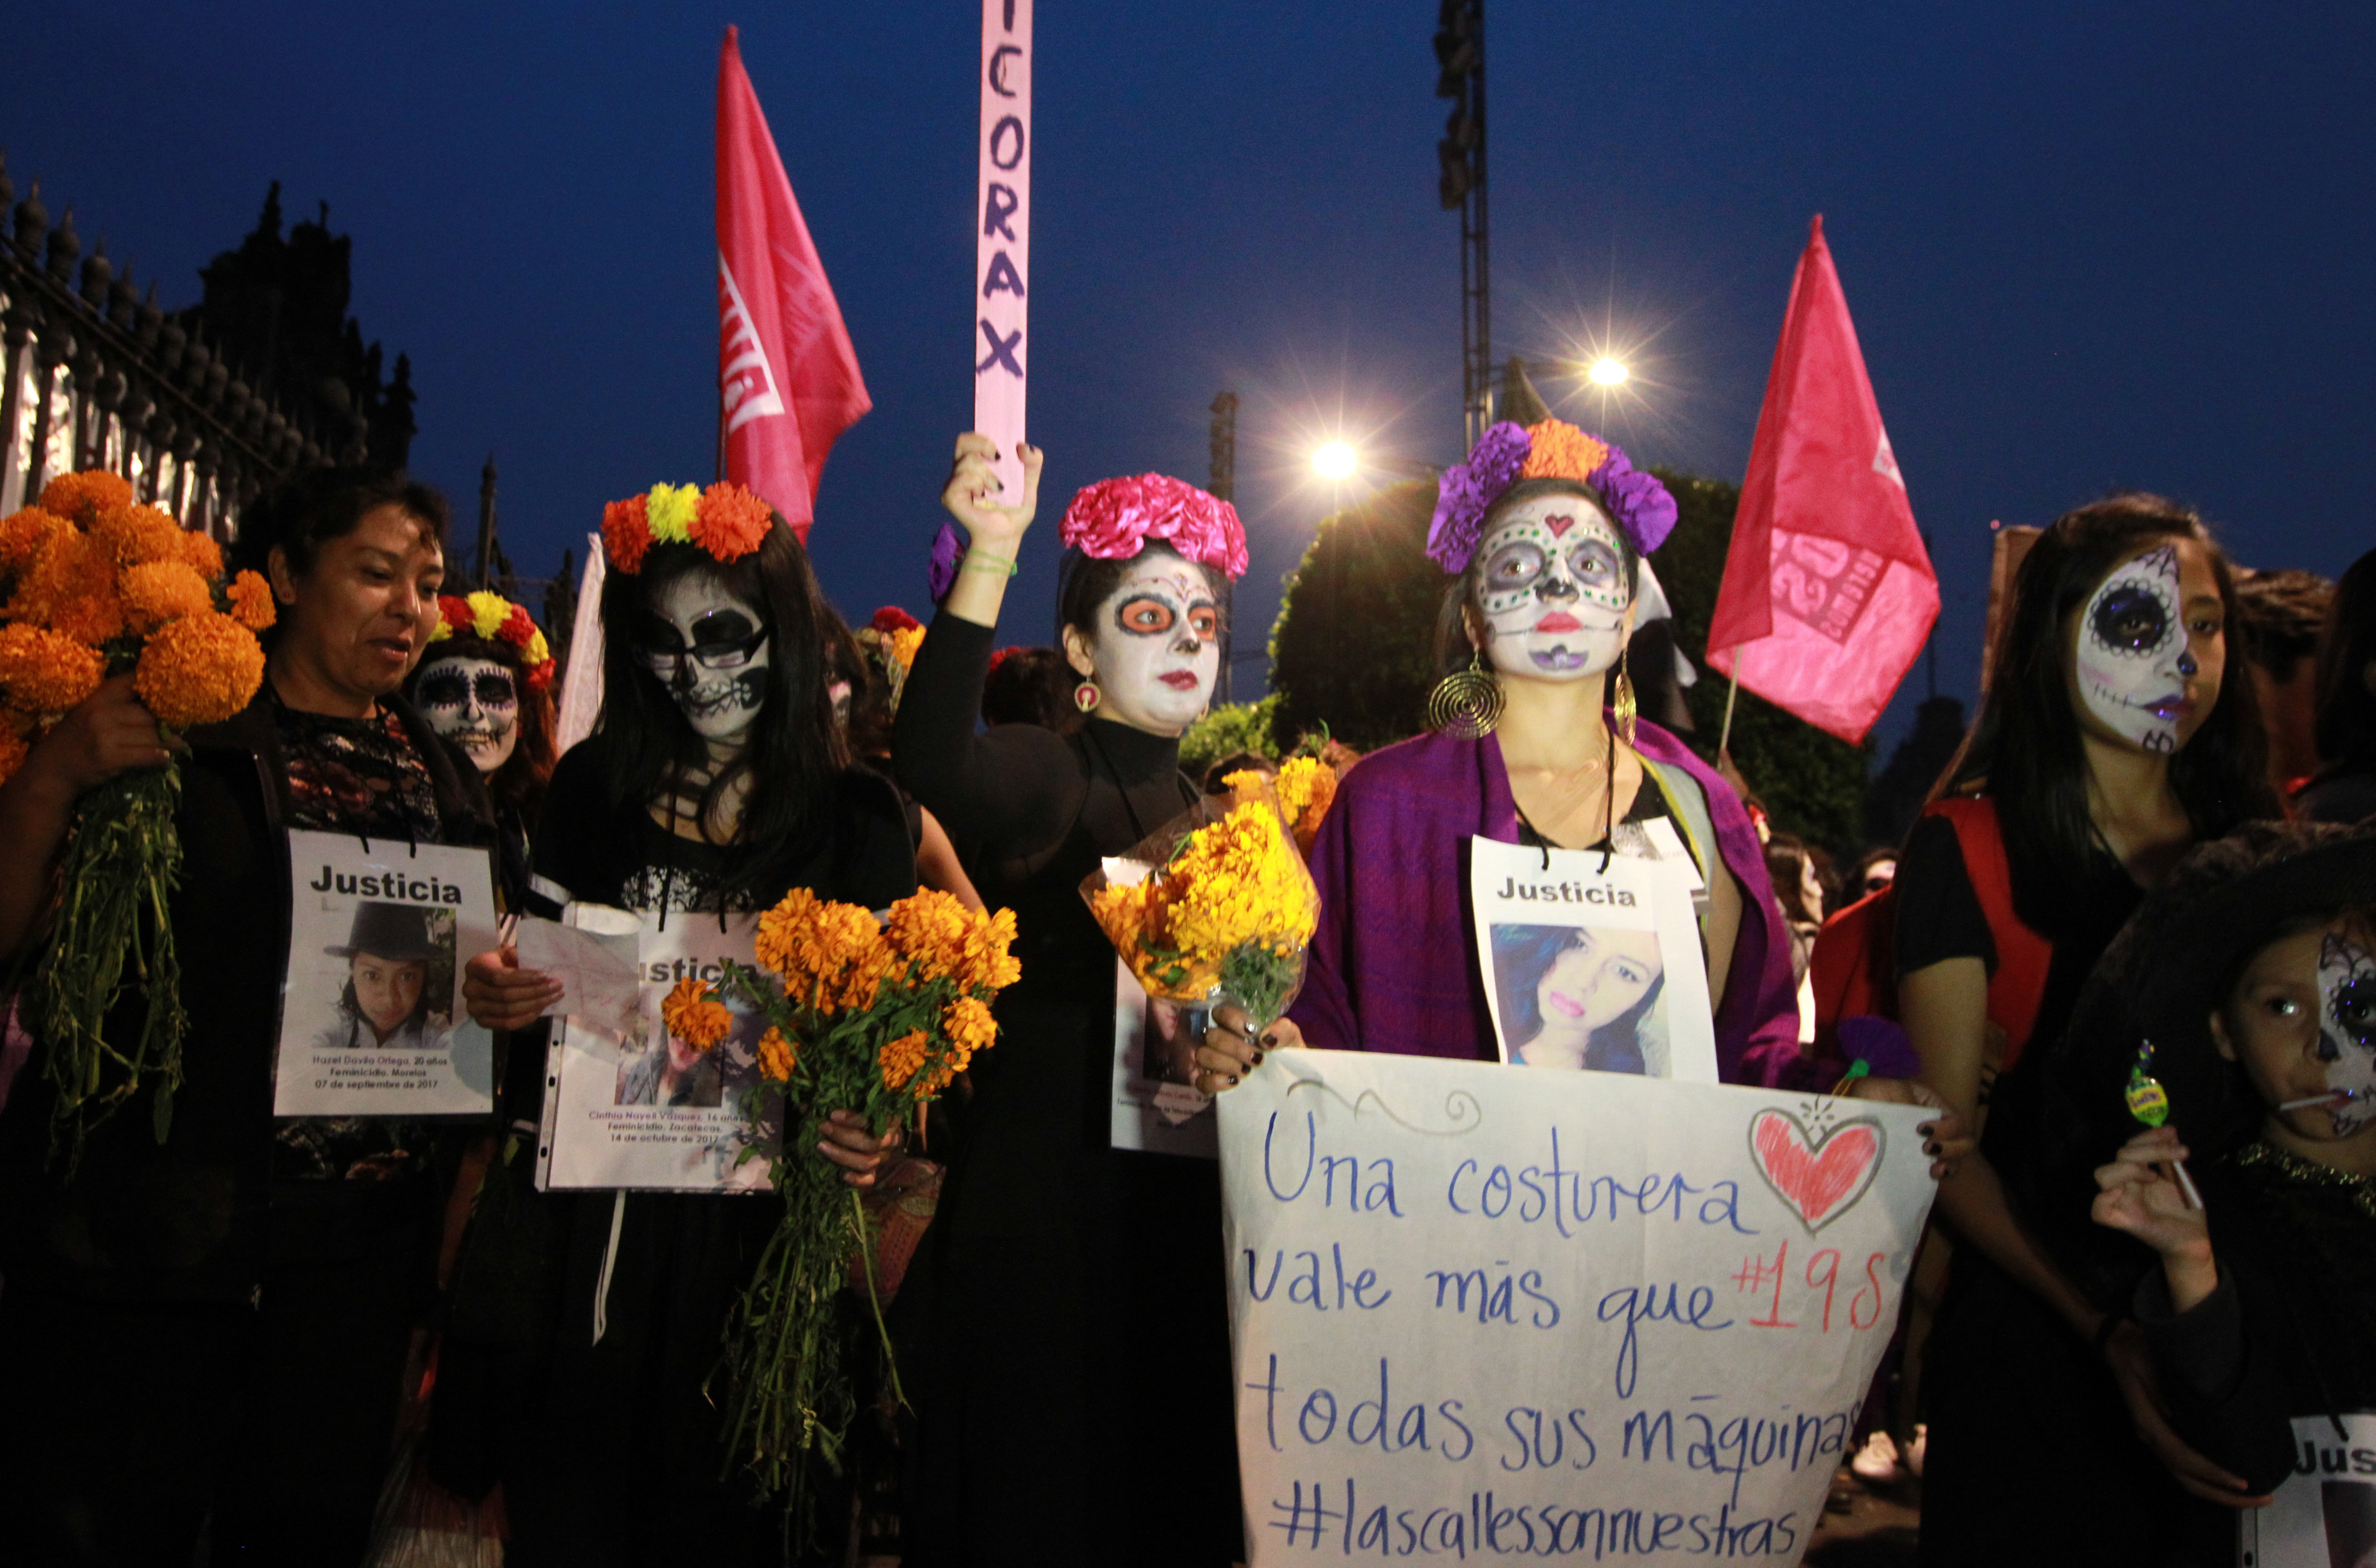  Vestidas de catrinas, mujeres protestan contra los feminicidios en la CDMx